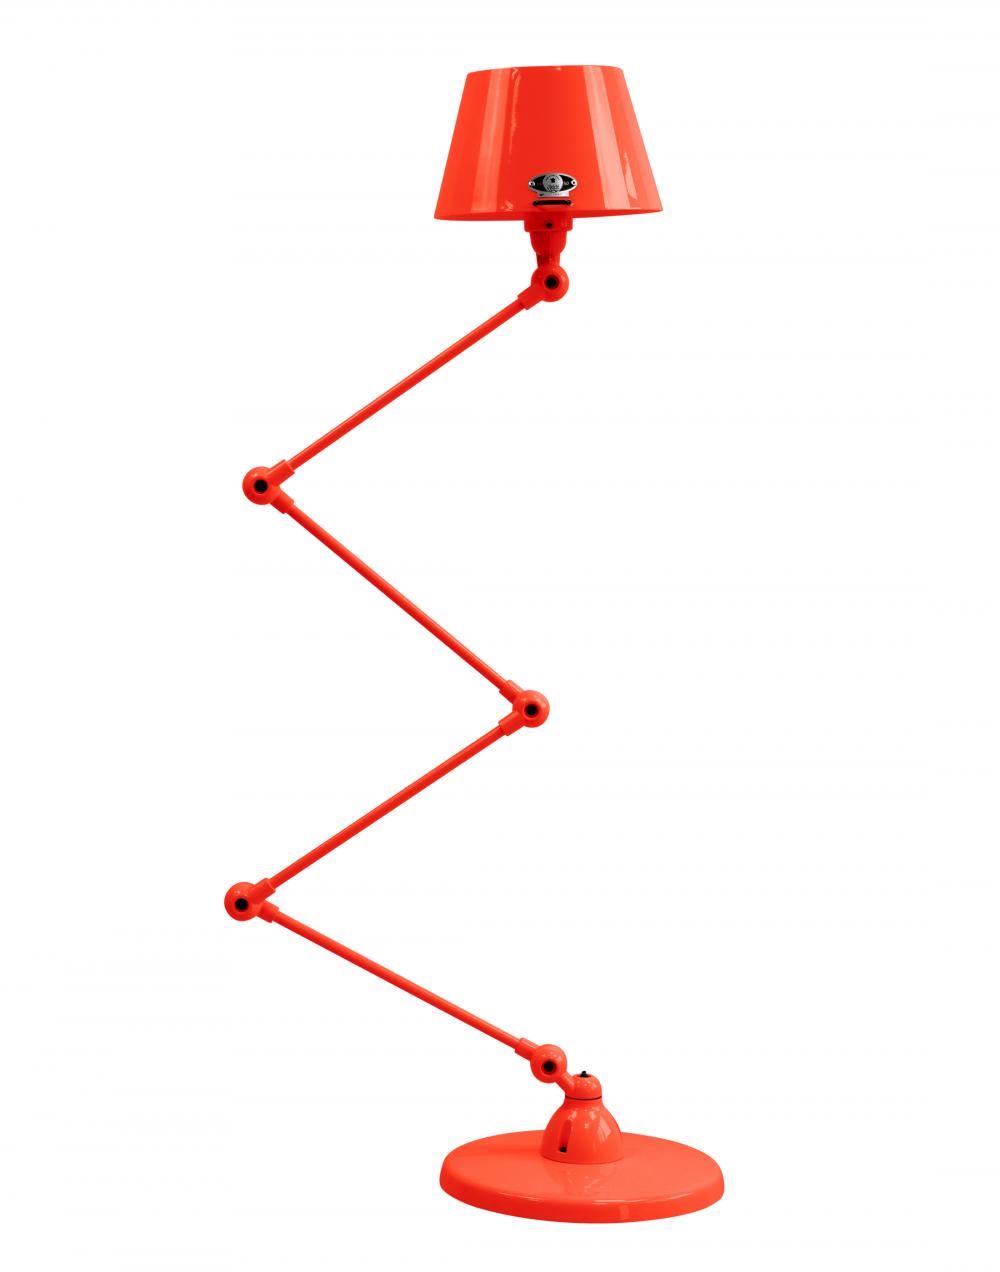 Jielde Aicler Zigzag 4 Arm Desk Or Floor Light Straight Shade Red Matt